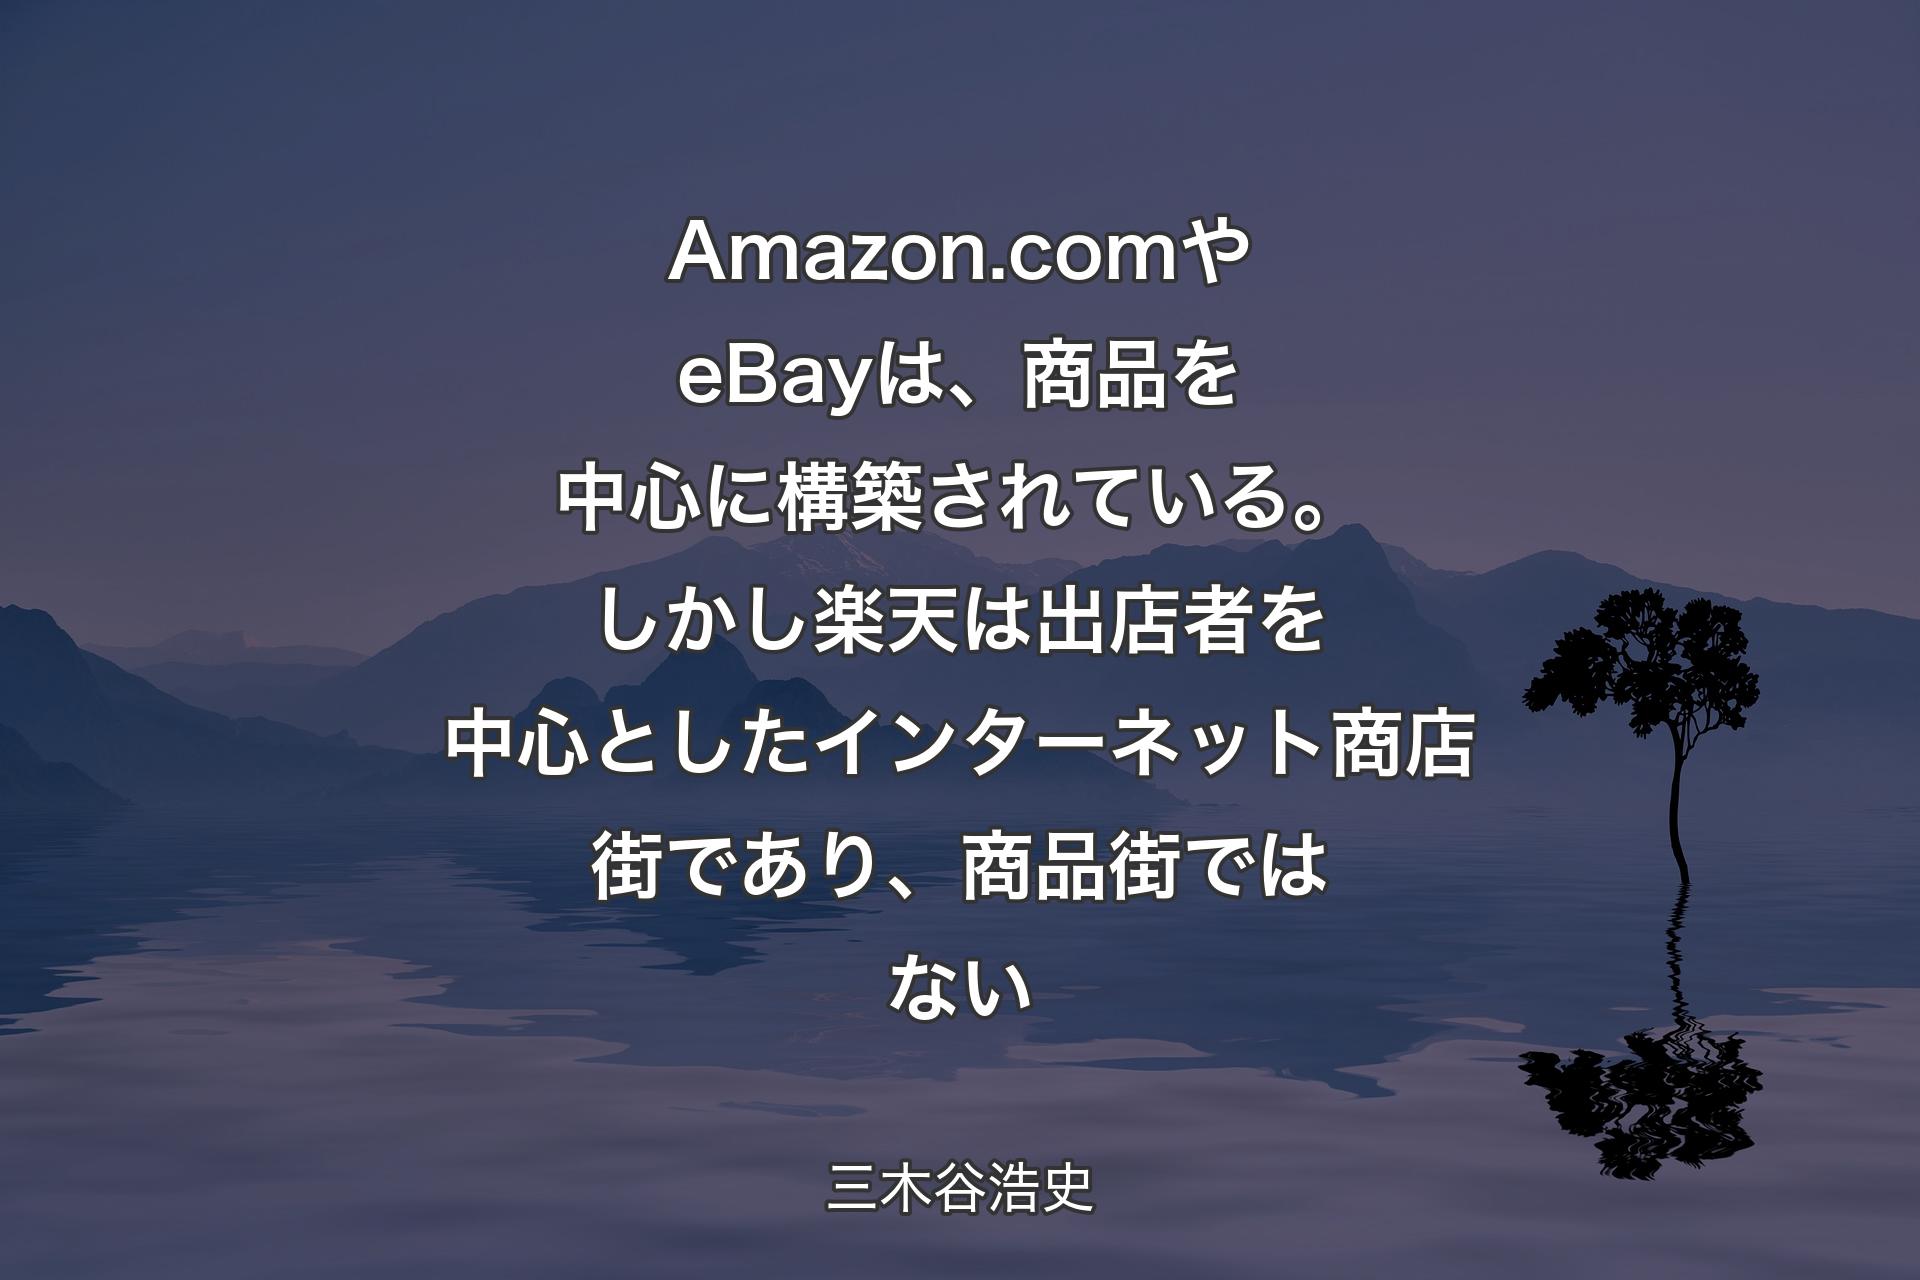 【背景4】Amazon.com やeBayは、商品を中心に構築されている。しかし楽天は出店者を中心としたインターネット商店街であり、商品街ではない - 三木谷浩史